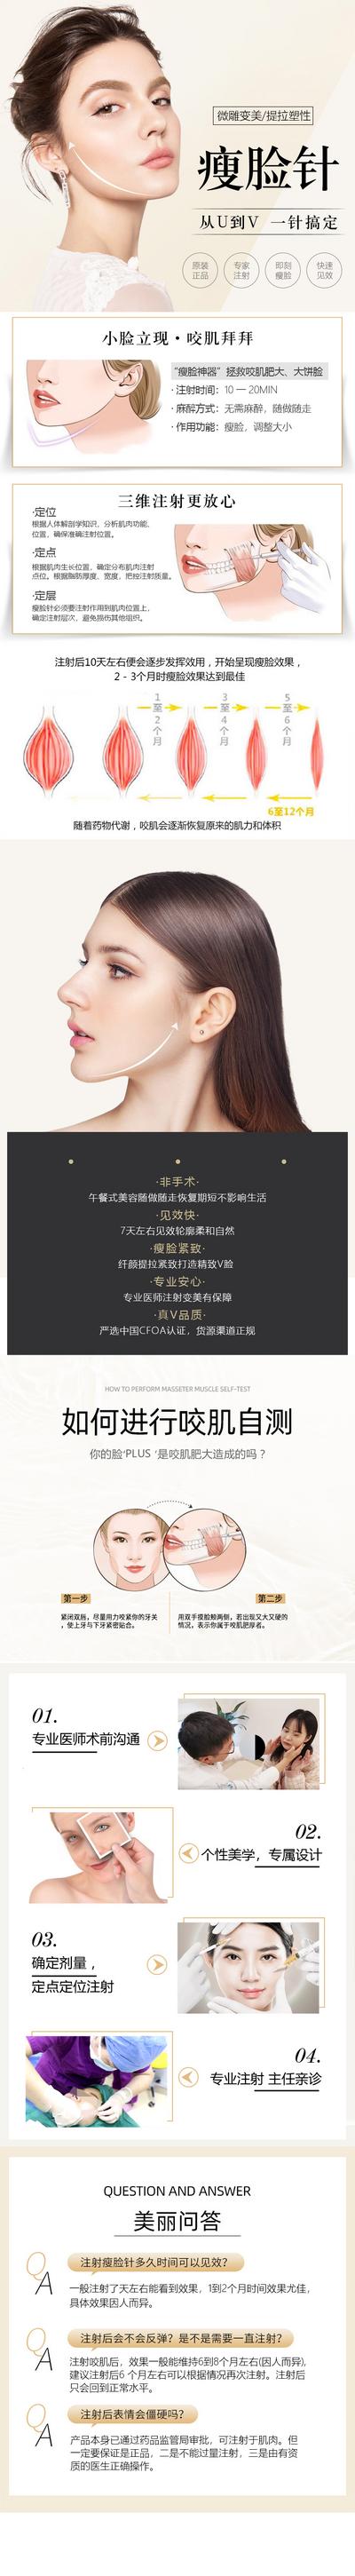 【南门网】广告 海报 医美 人物 瘦脸针 长图 专题 促销